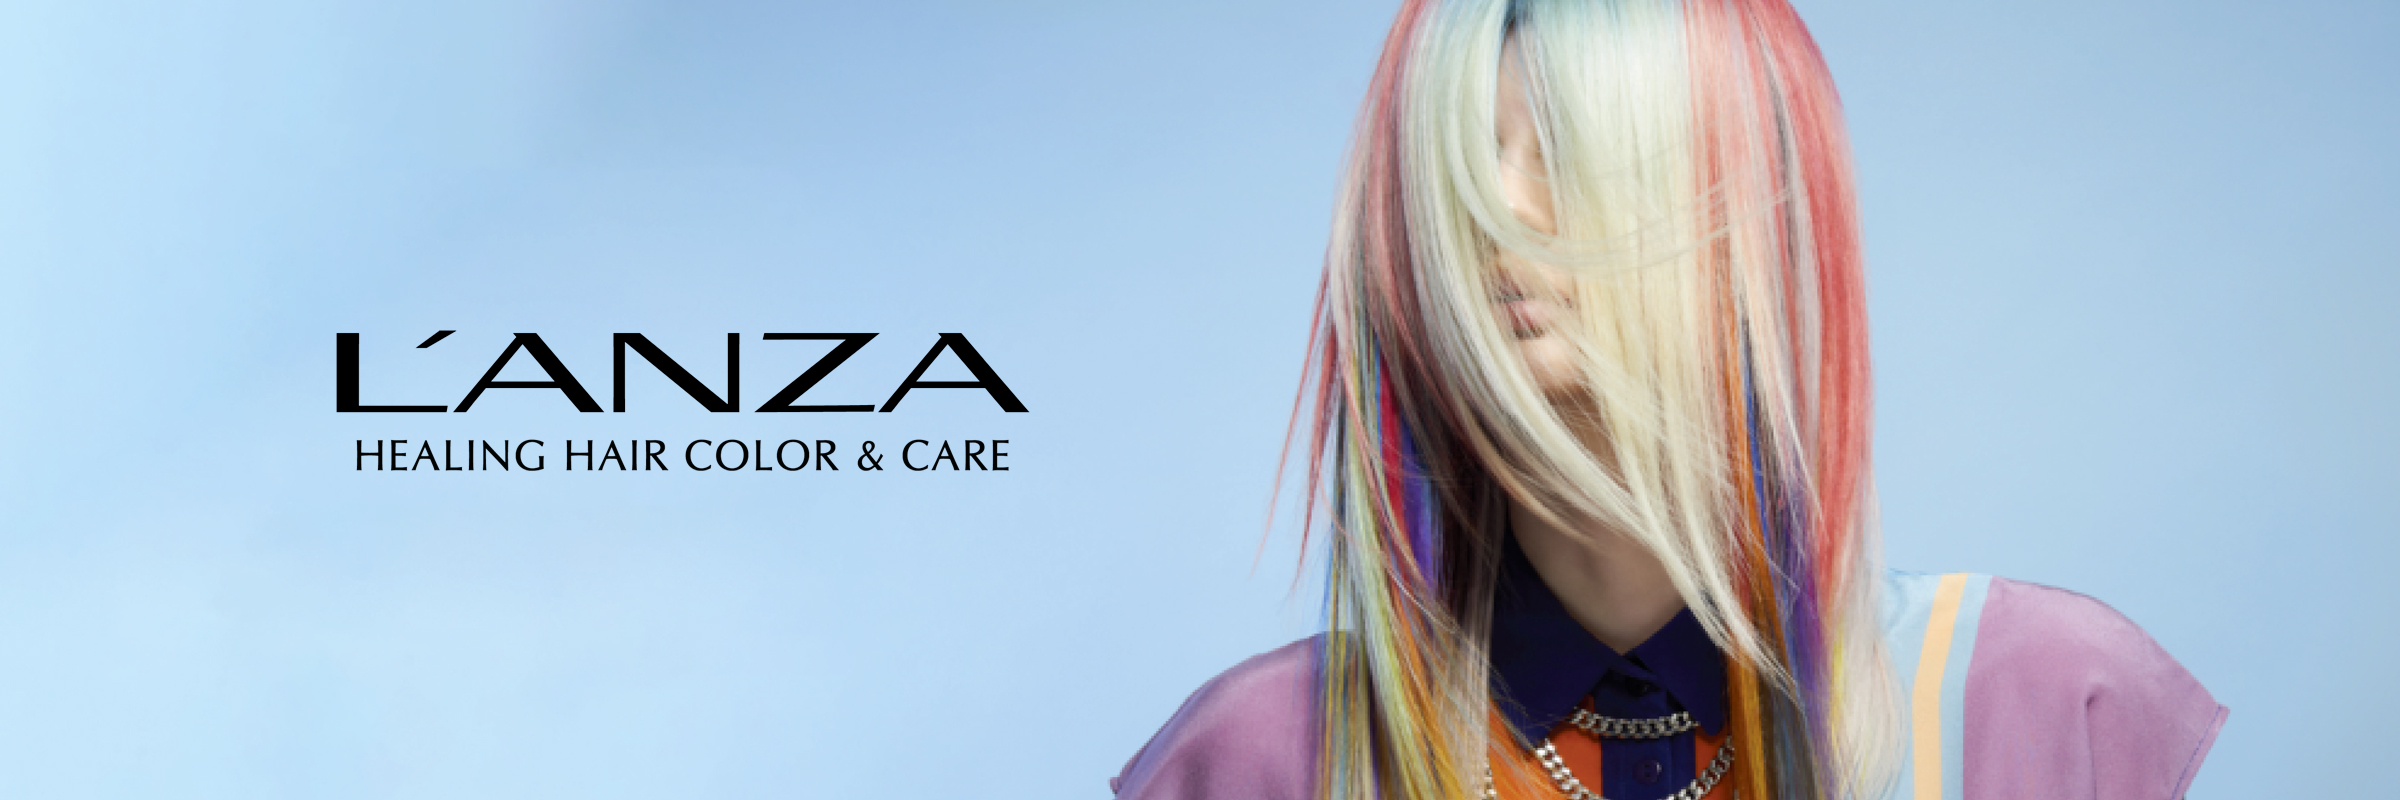 Prodotti L'Anza Healing Hair Color & Care